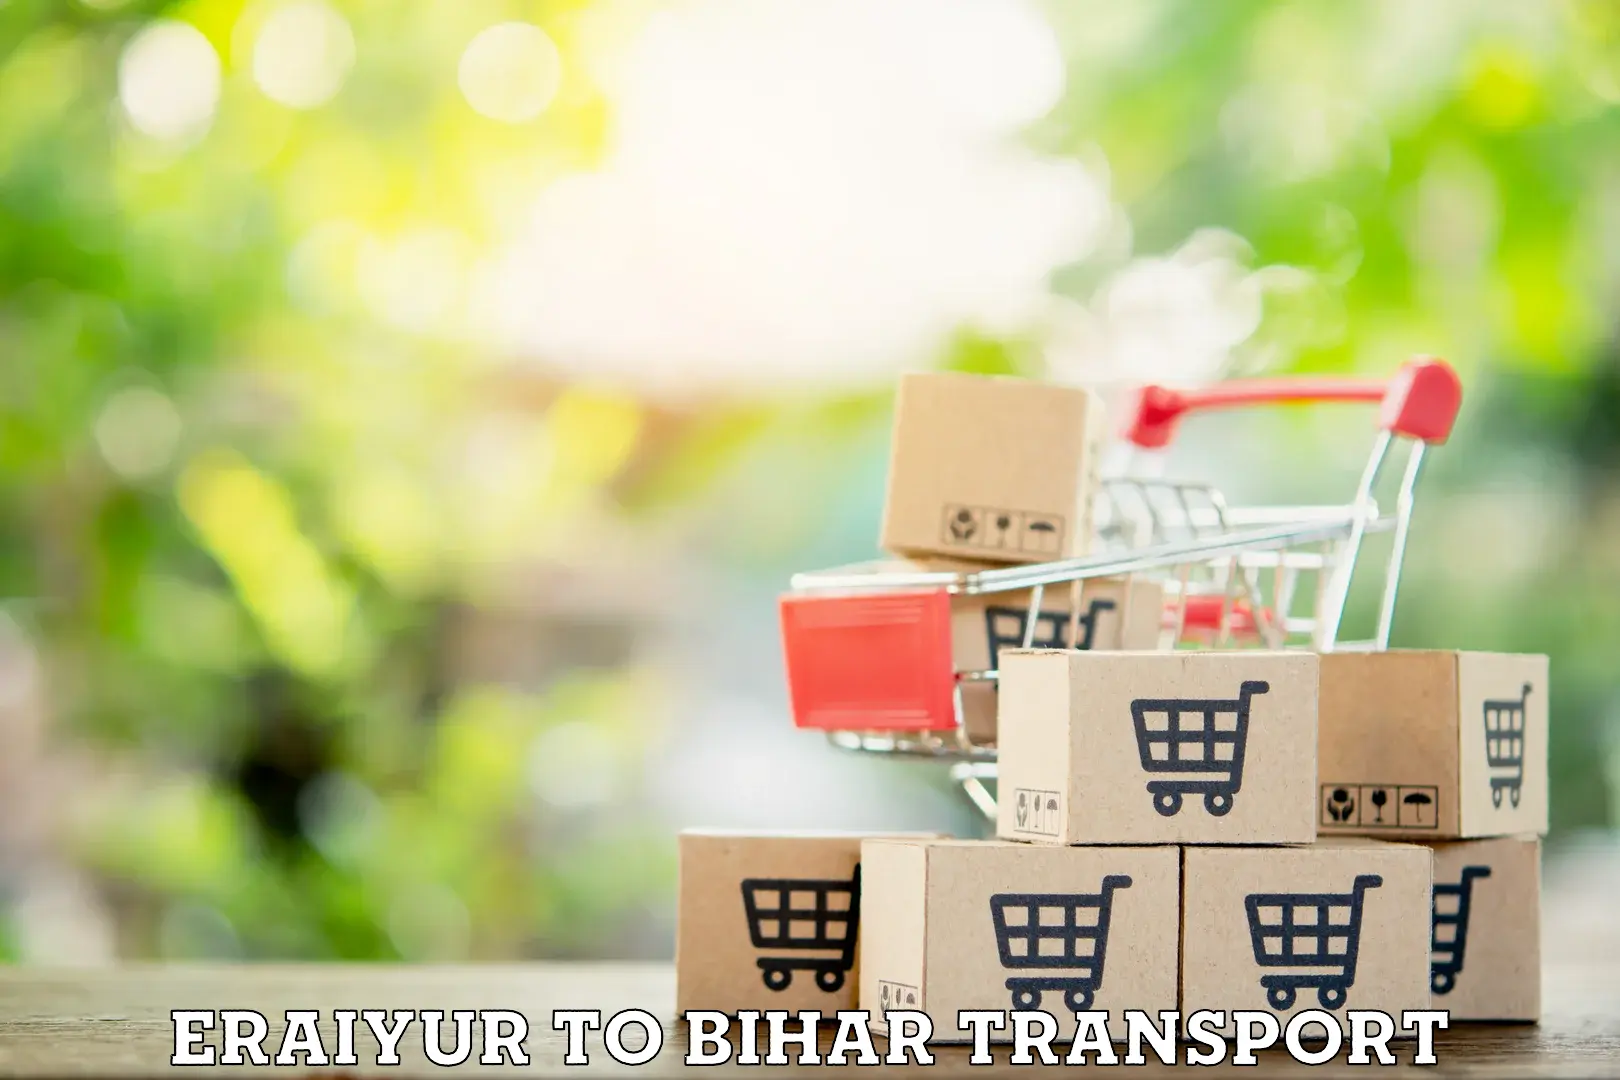 Air freight transport services Eraiyur to Bettiah